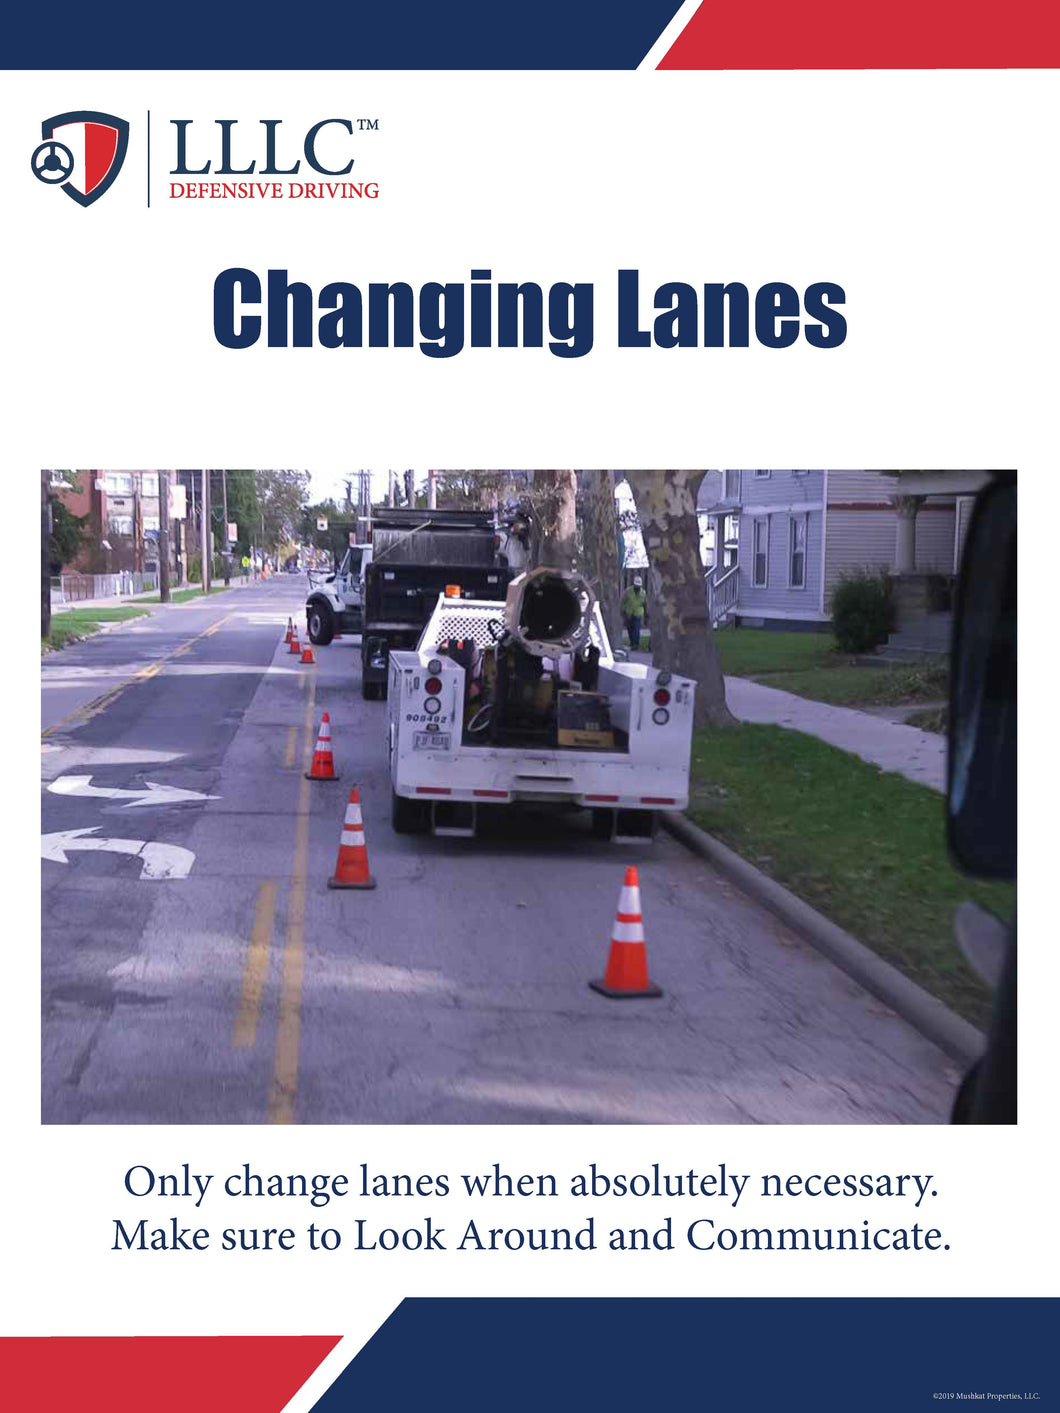 LLLC - Lane Changing